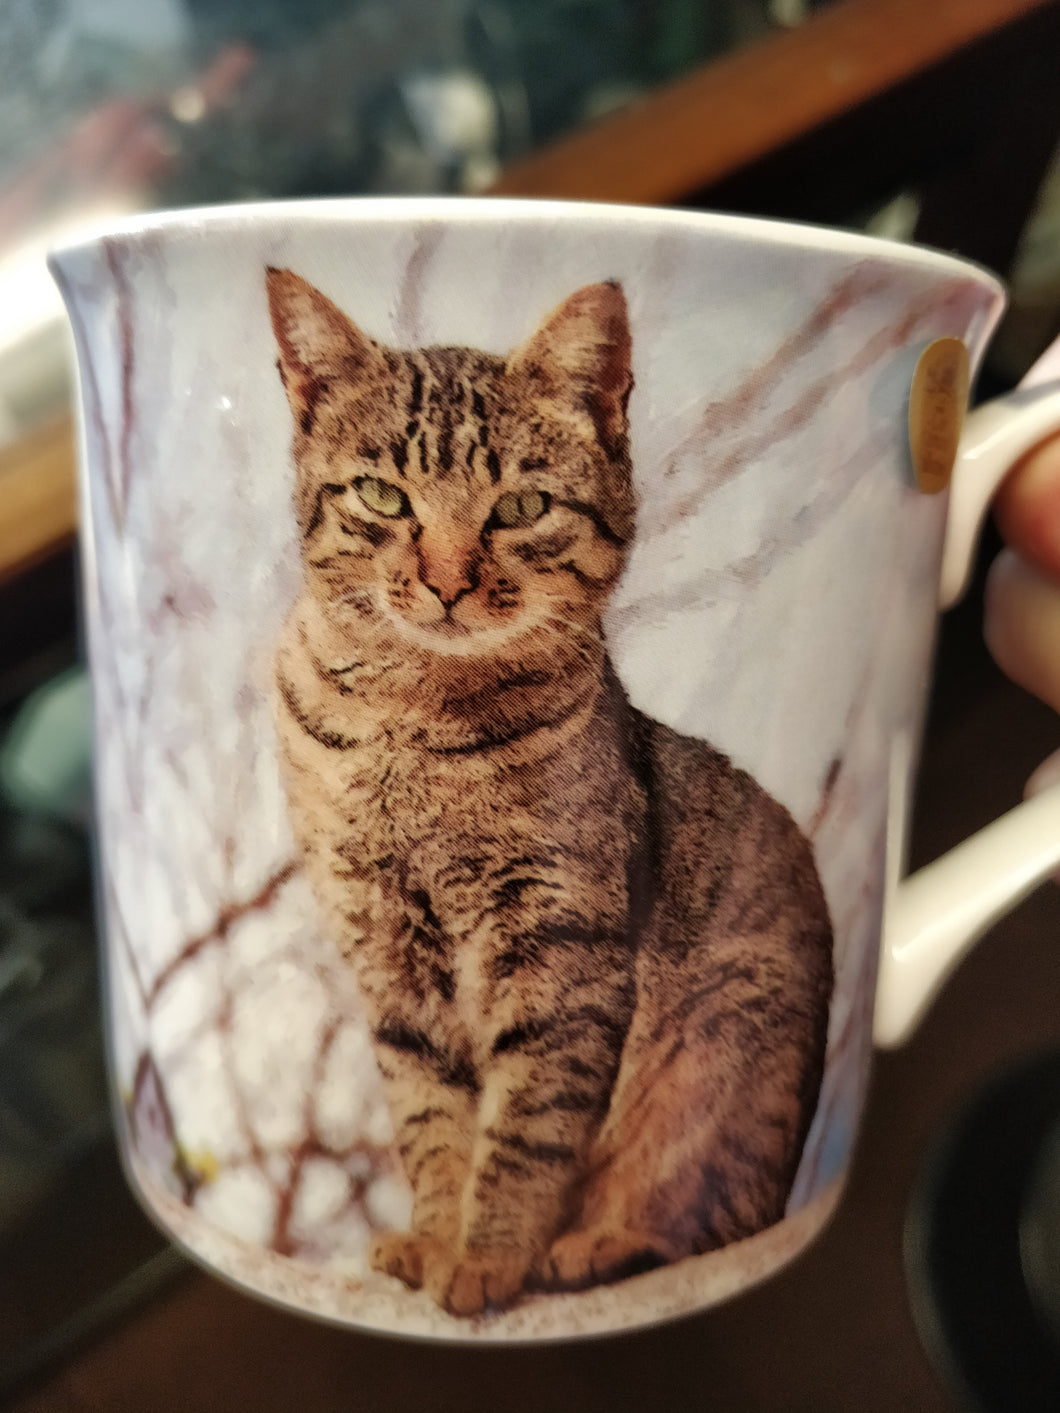 Tabby Cat Mug